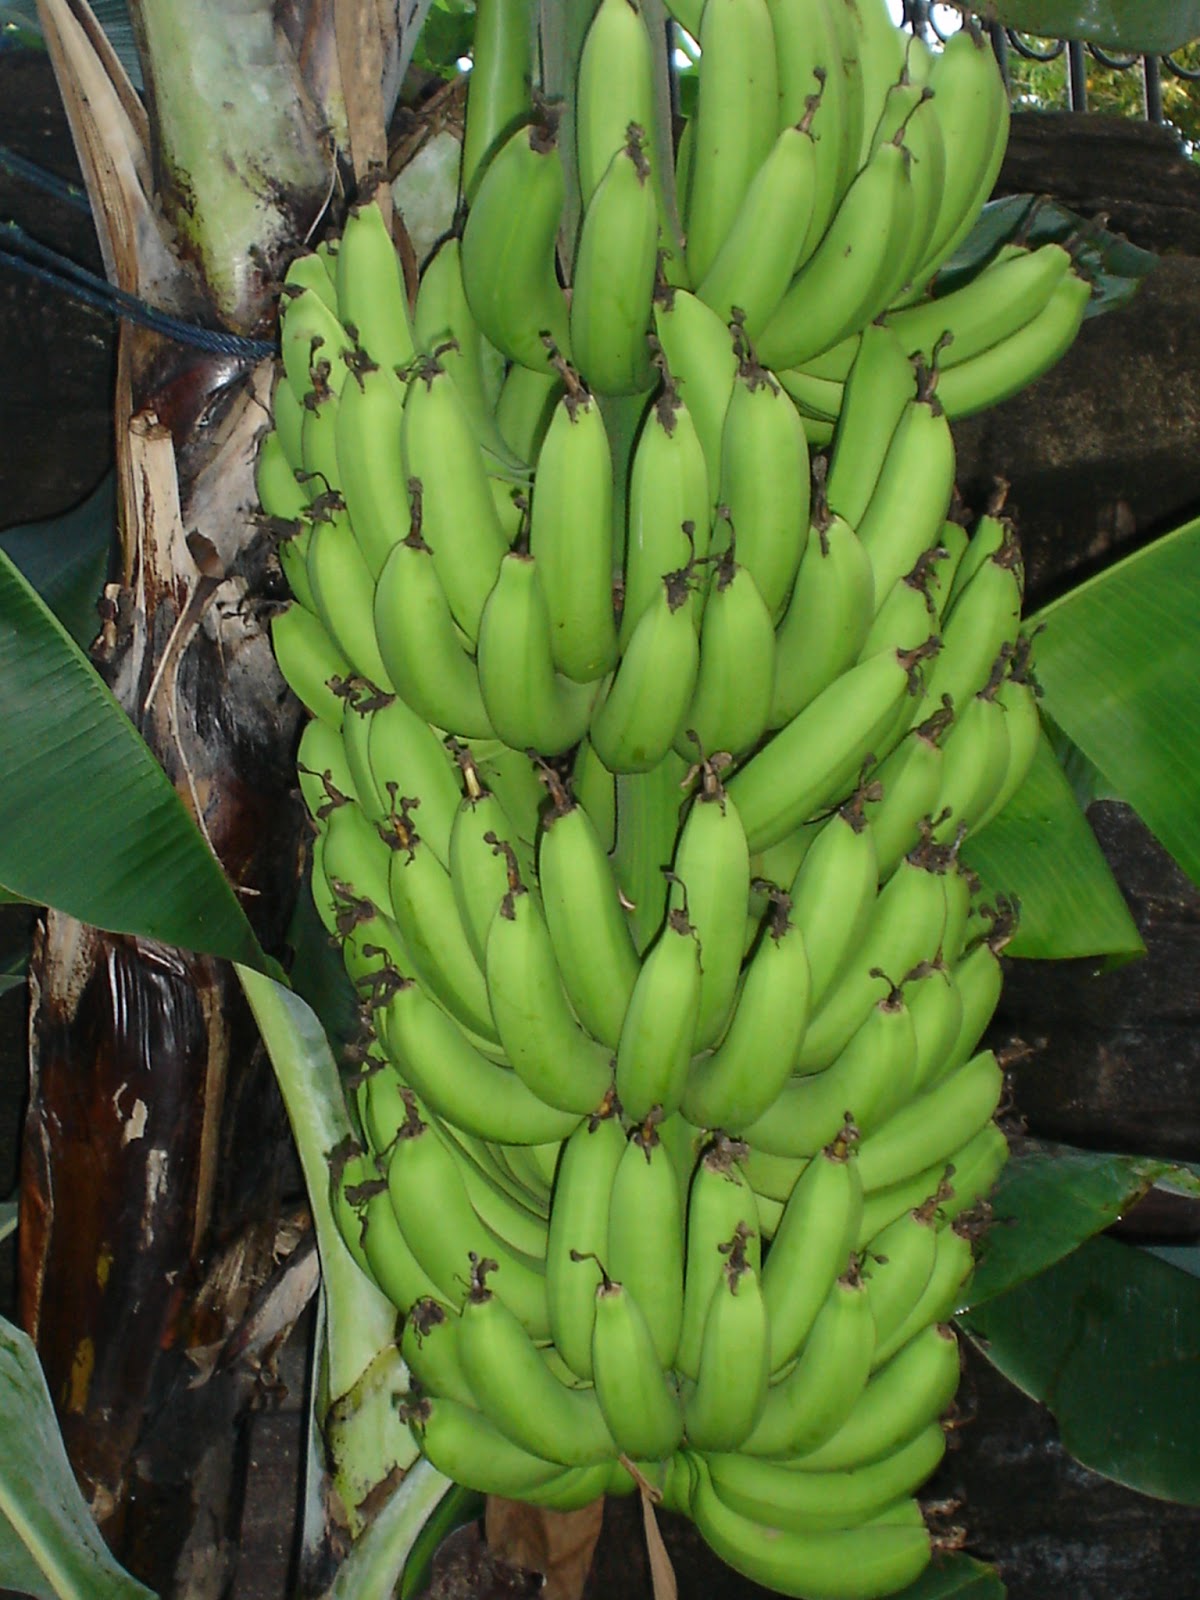 Hasiat buah  pisang  gerobak tanah tua